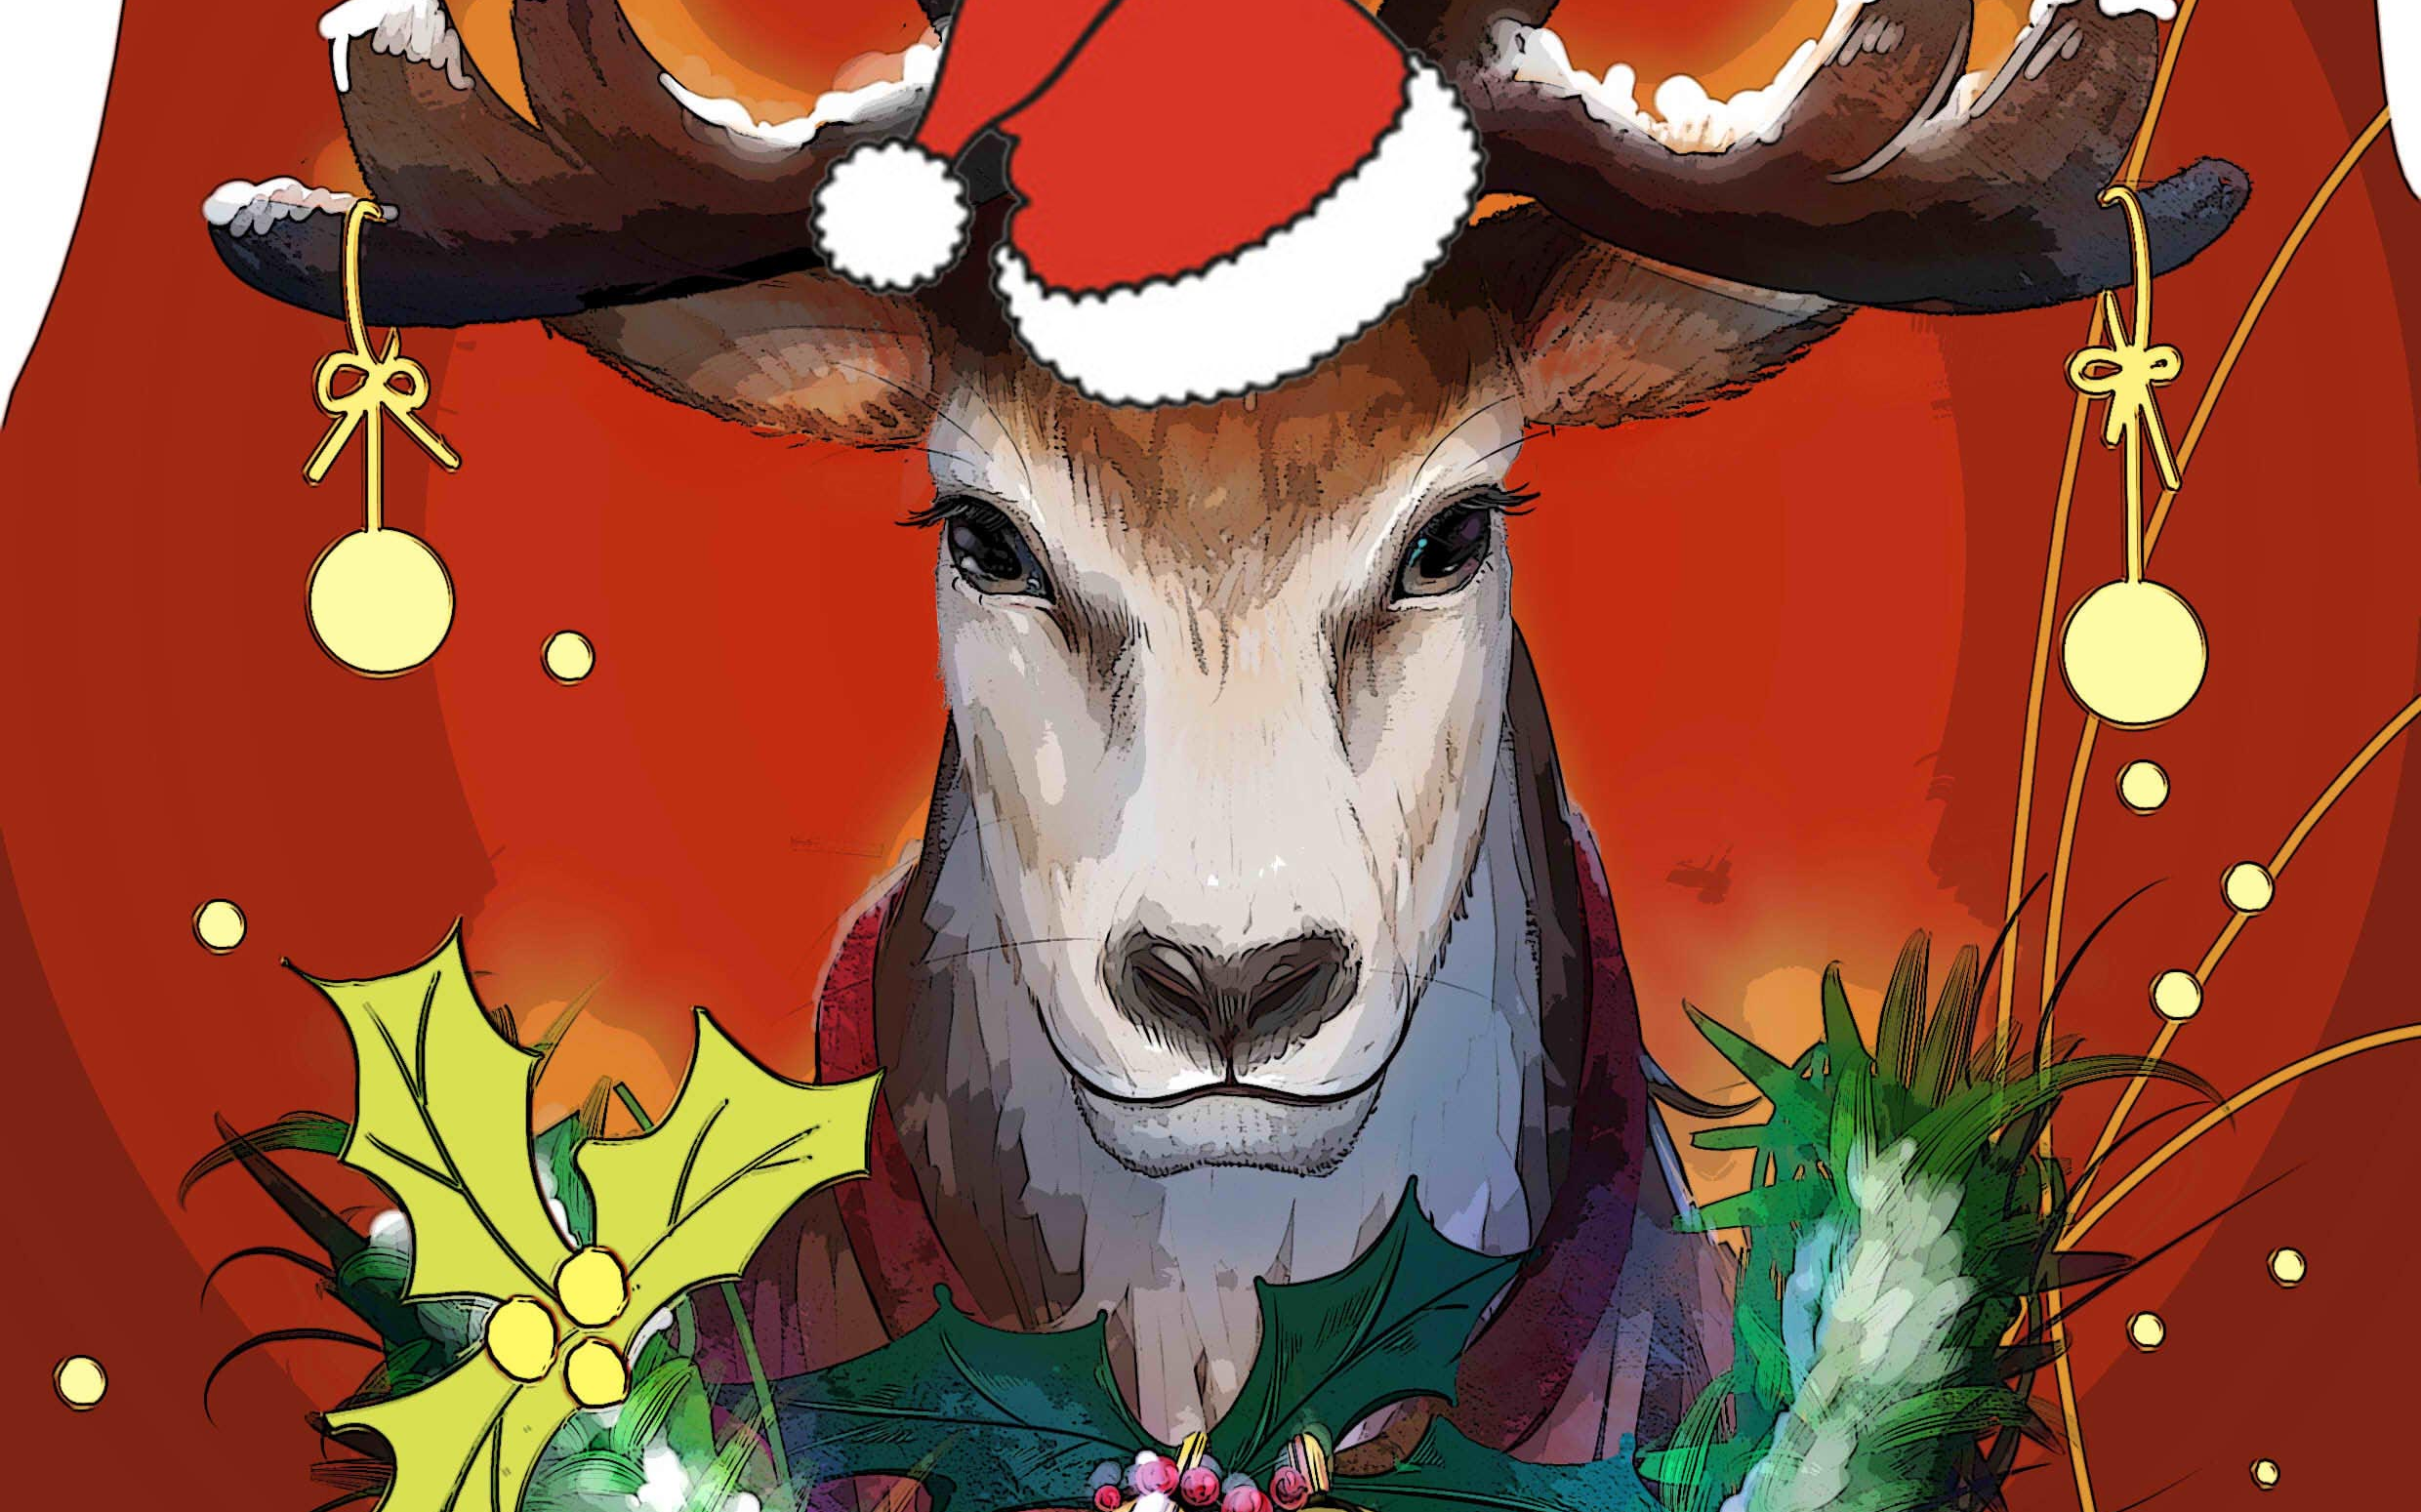 【厚涂】画一只麋鹿贺卡~祝大家圣诞节快乐!merry christmas